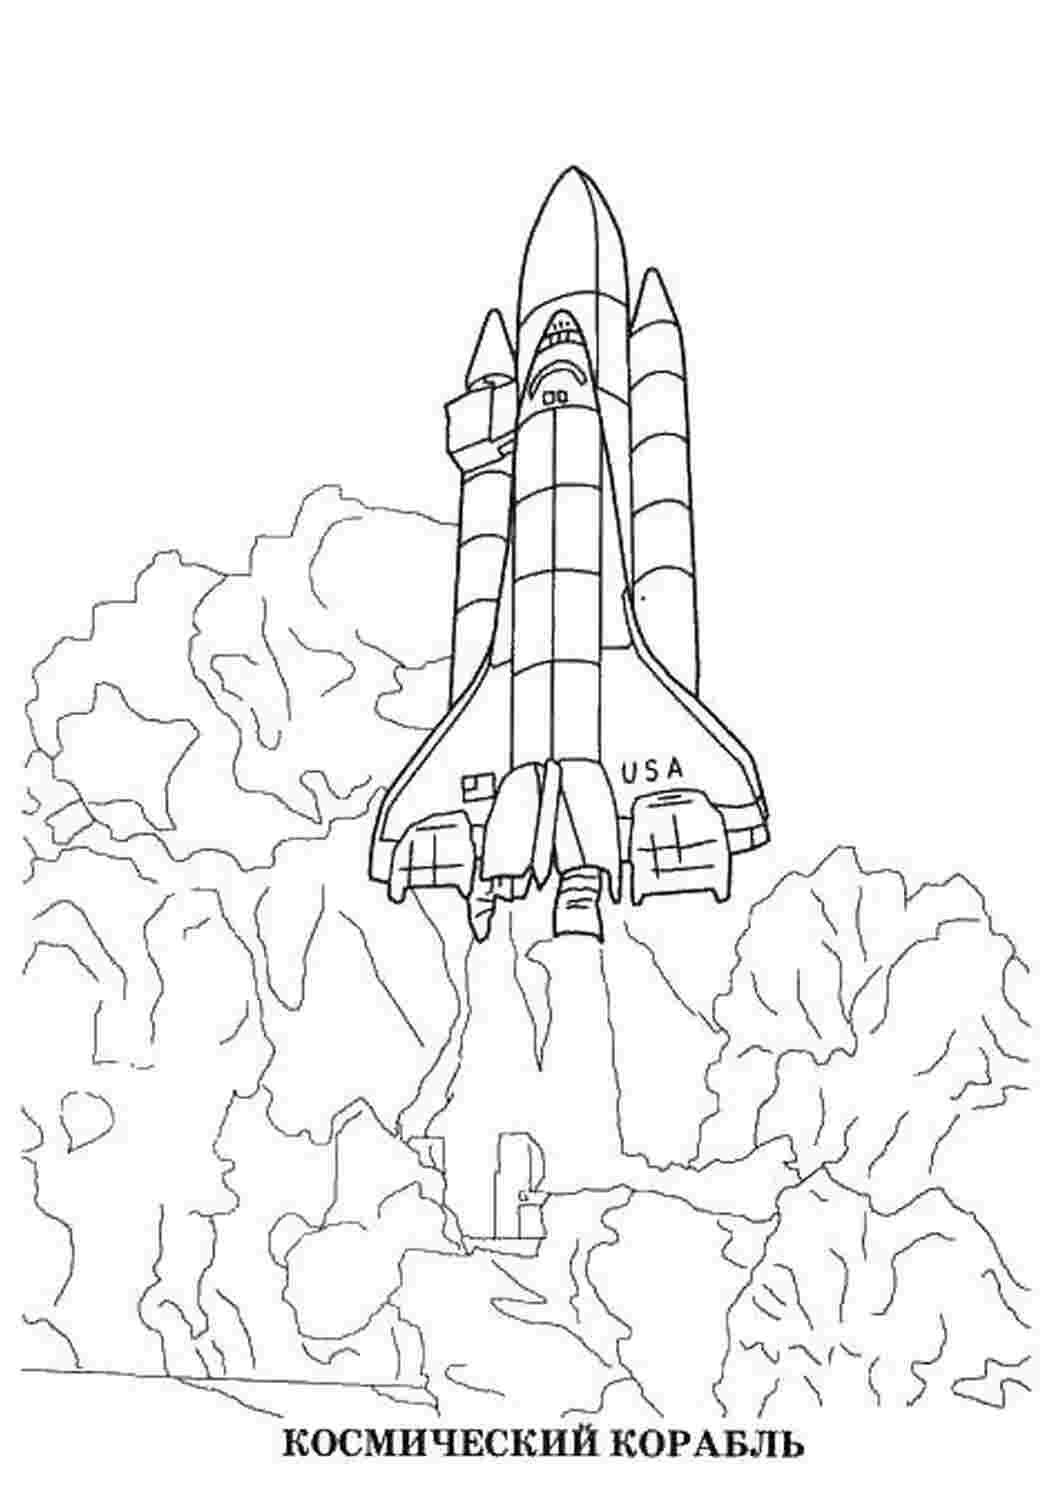 Рисунок на тему космический корабль Восток